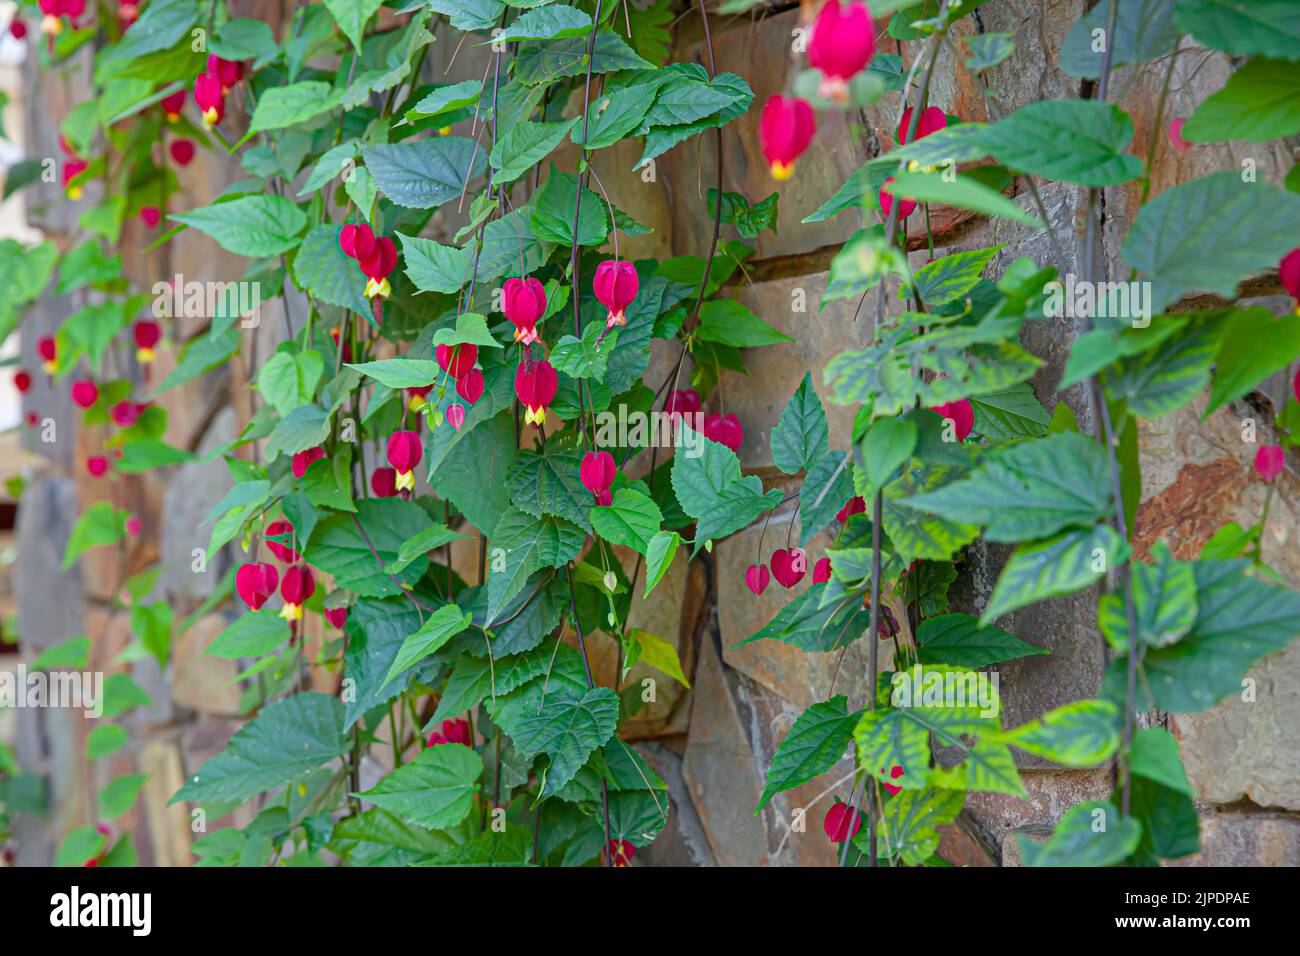 La fleur rouge à la traîne aussi connu comme Abutilon megapotamicum floraison dans le jardin ensoleillé avec fond de mur de pierre Banque D'Images